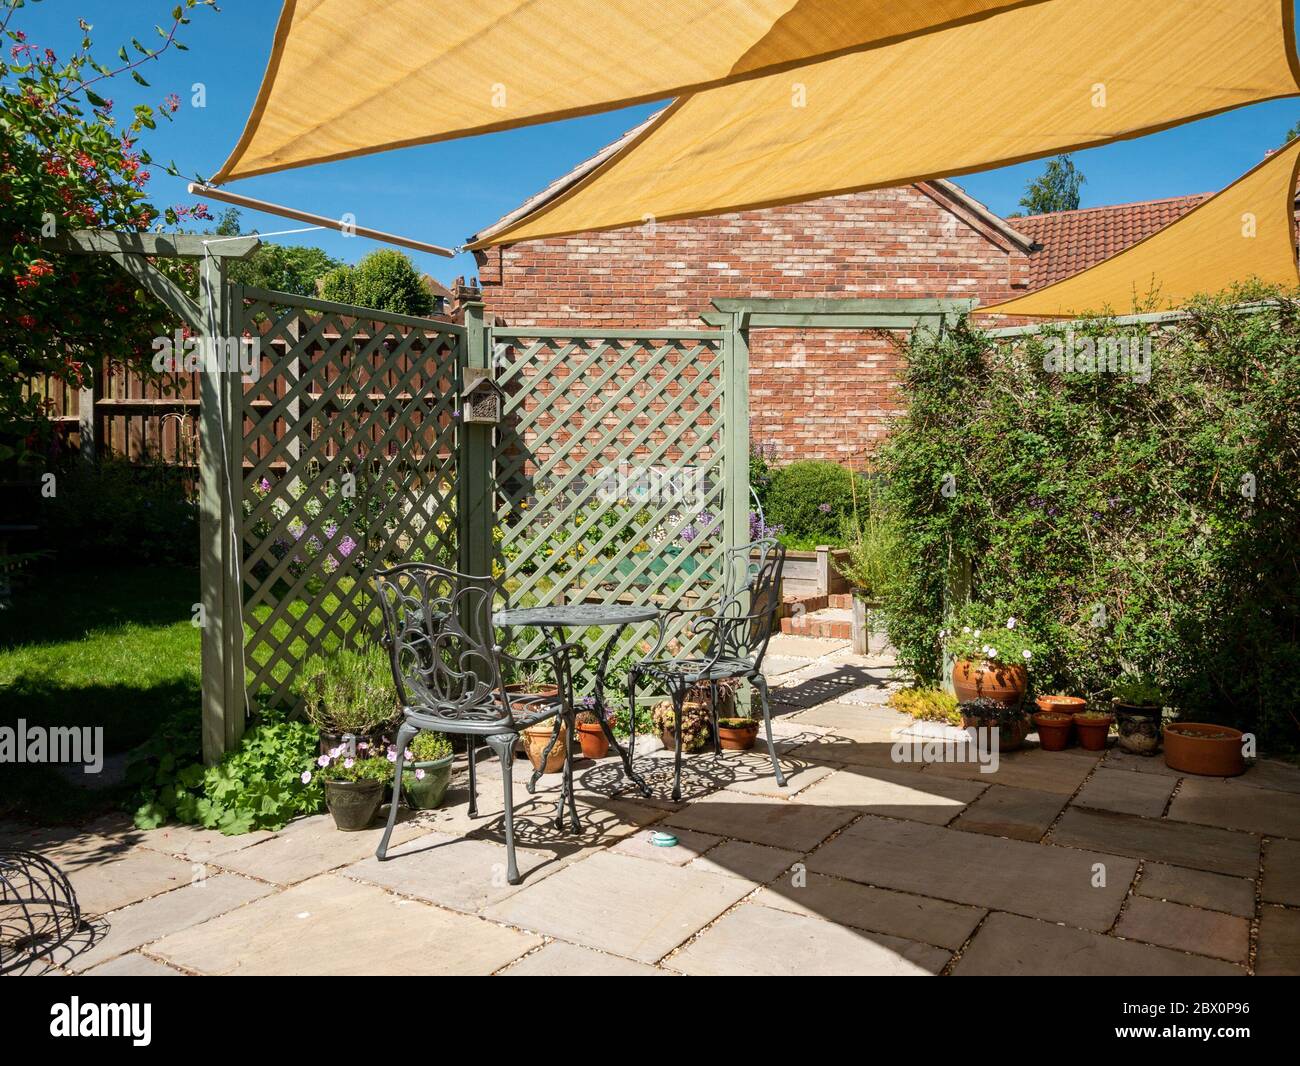 Piccolo patio giardino con ombrellone giallo, triangolare e cielo blu sopra in una soleggiata giornata estiva, Inghilterra, Regno Unito Foto Stock